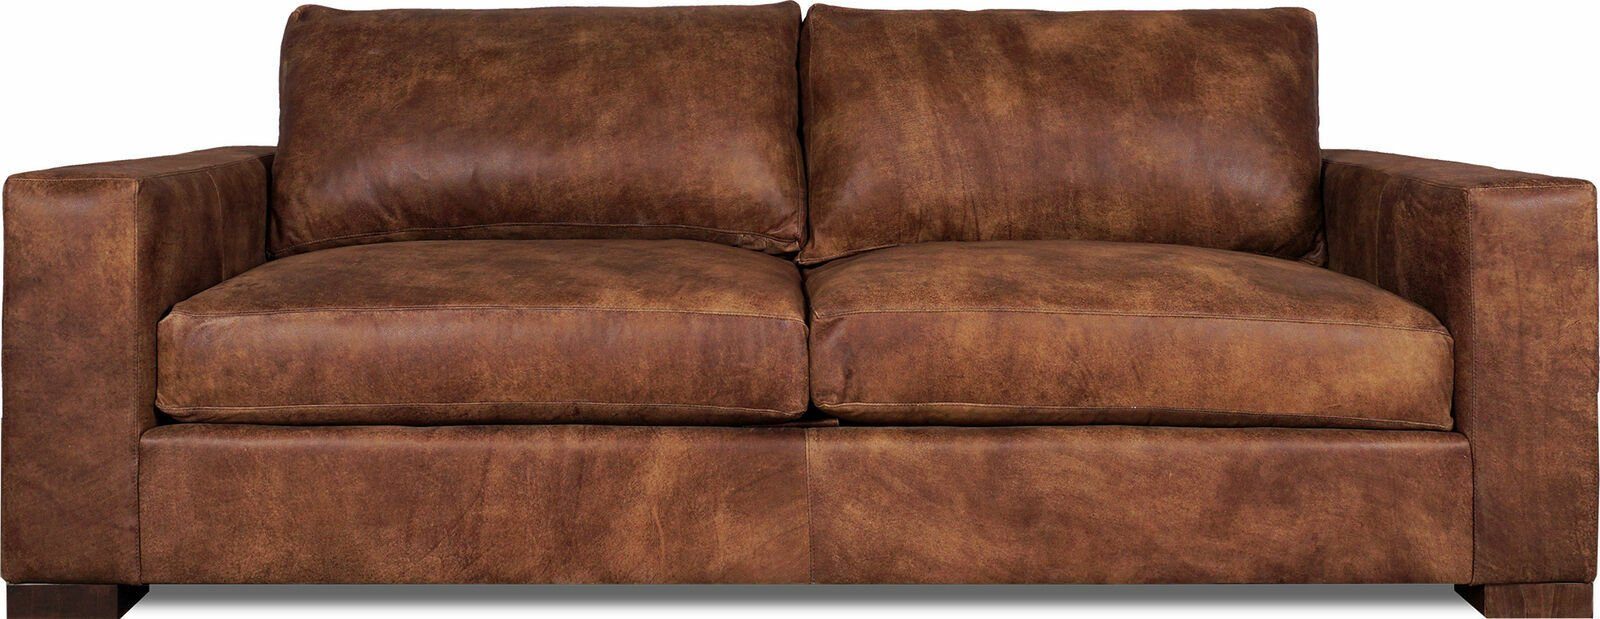 JVmoebel 3-Sitzer XXL Sofa 3 Sitzer Couch Chesterfield Garnitur Leder braun Wohnzimmer, Made in Europe